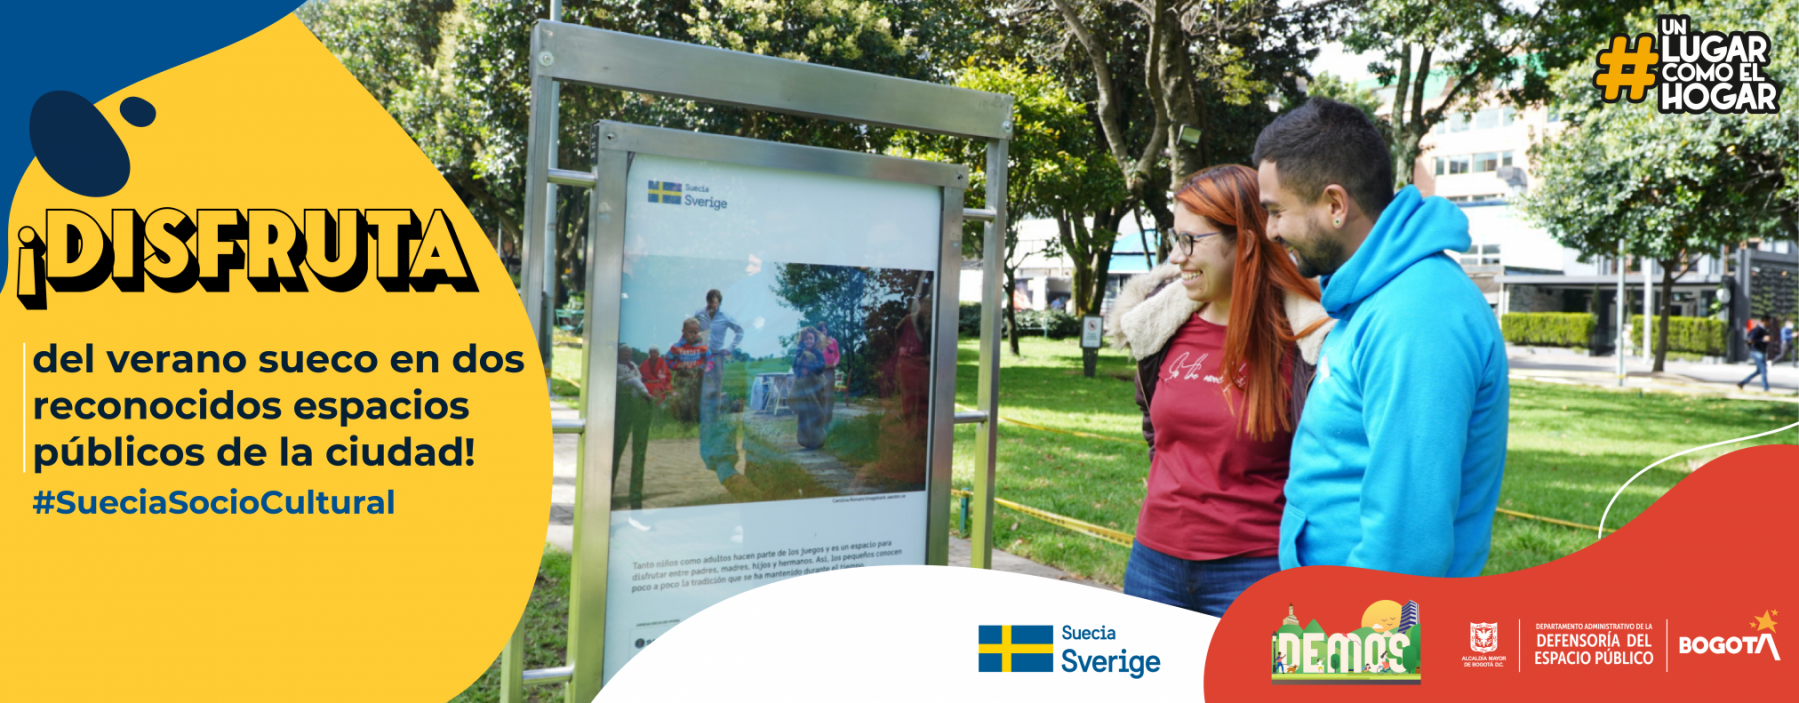 Disfruta del verano sueco en dos espacios públicos